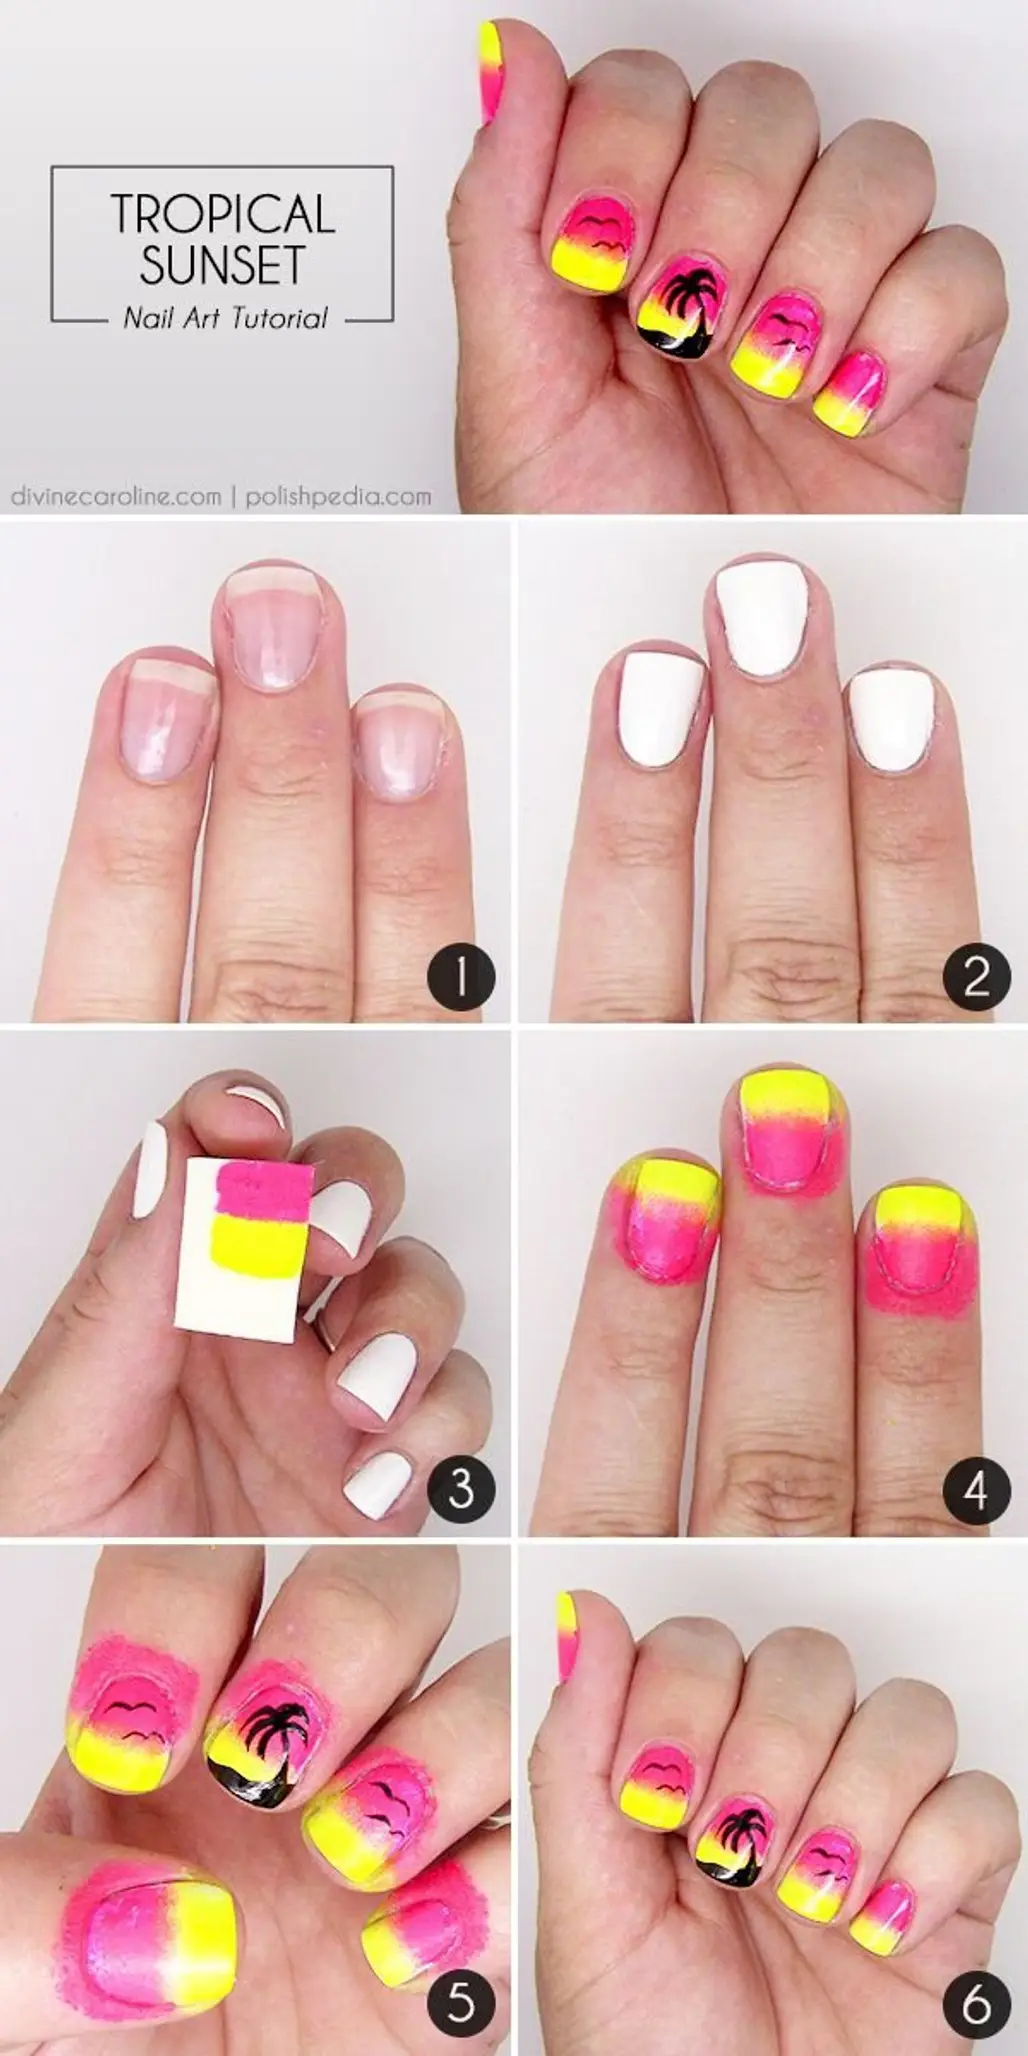 nail,finger,color,pink,nail care,